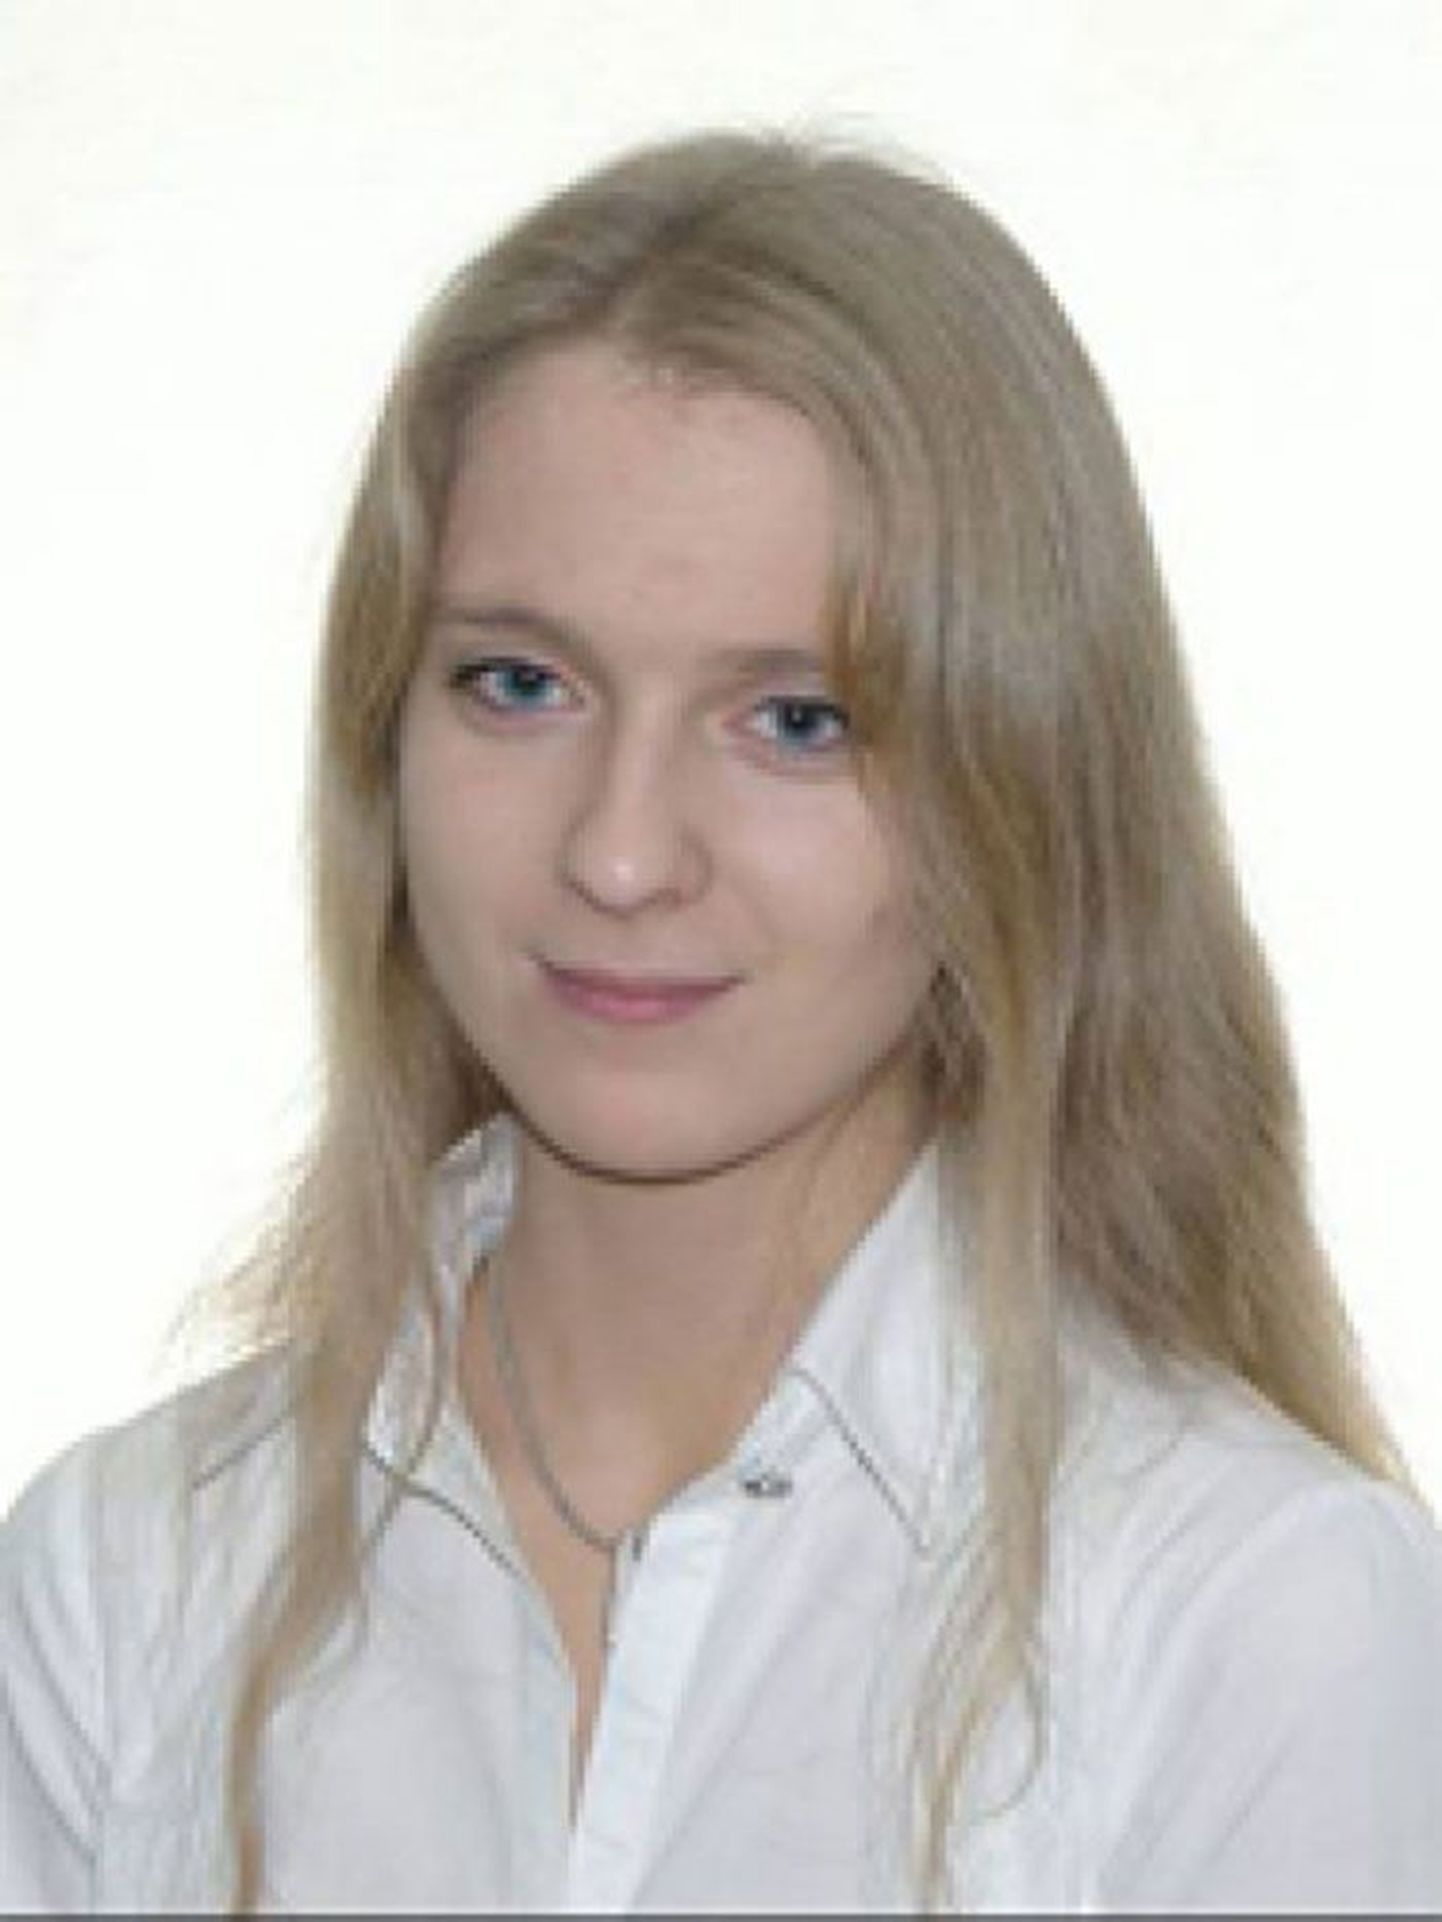 Mari-Liis Jakobson
Tallinna Ülikooli politoloog